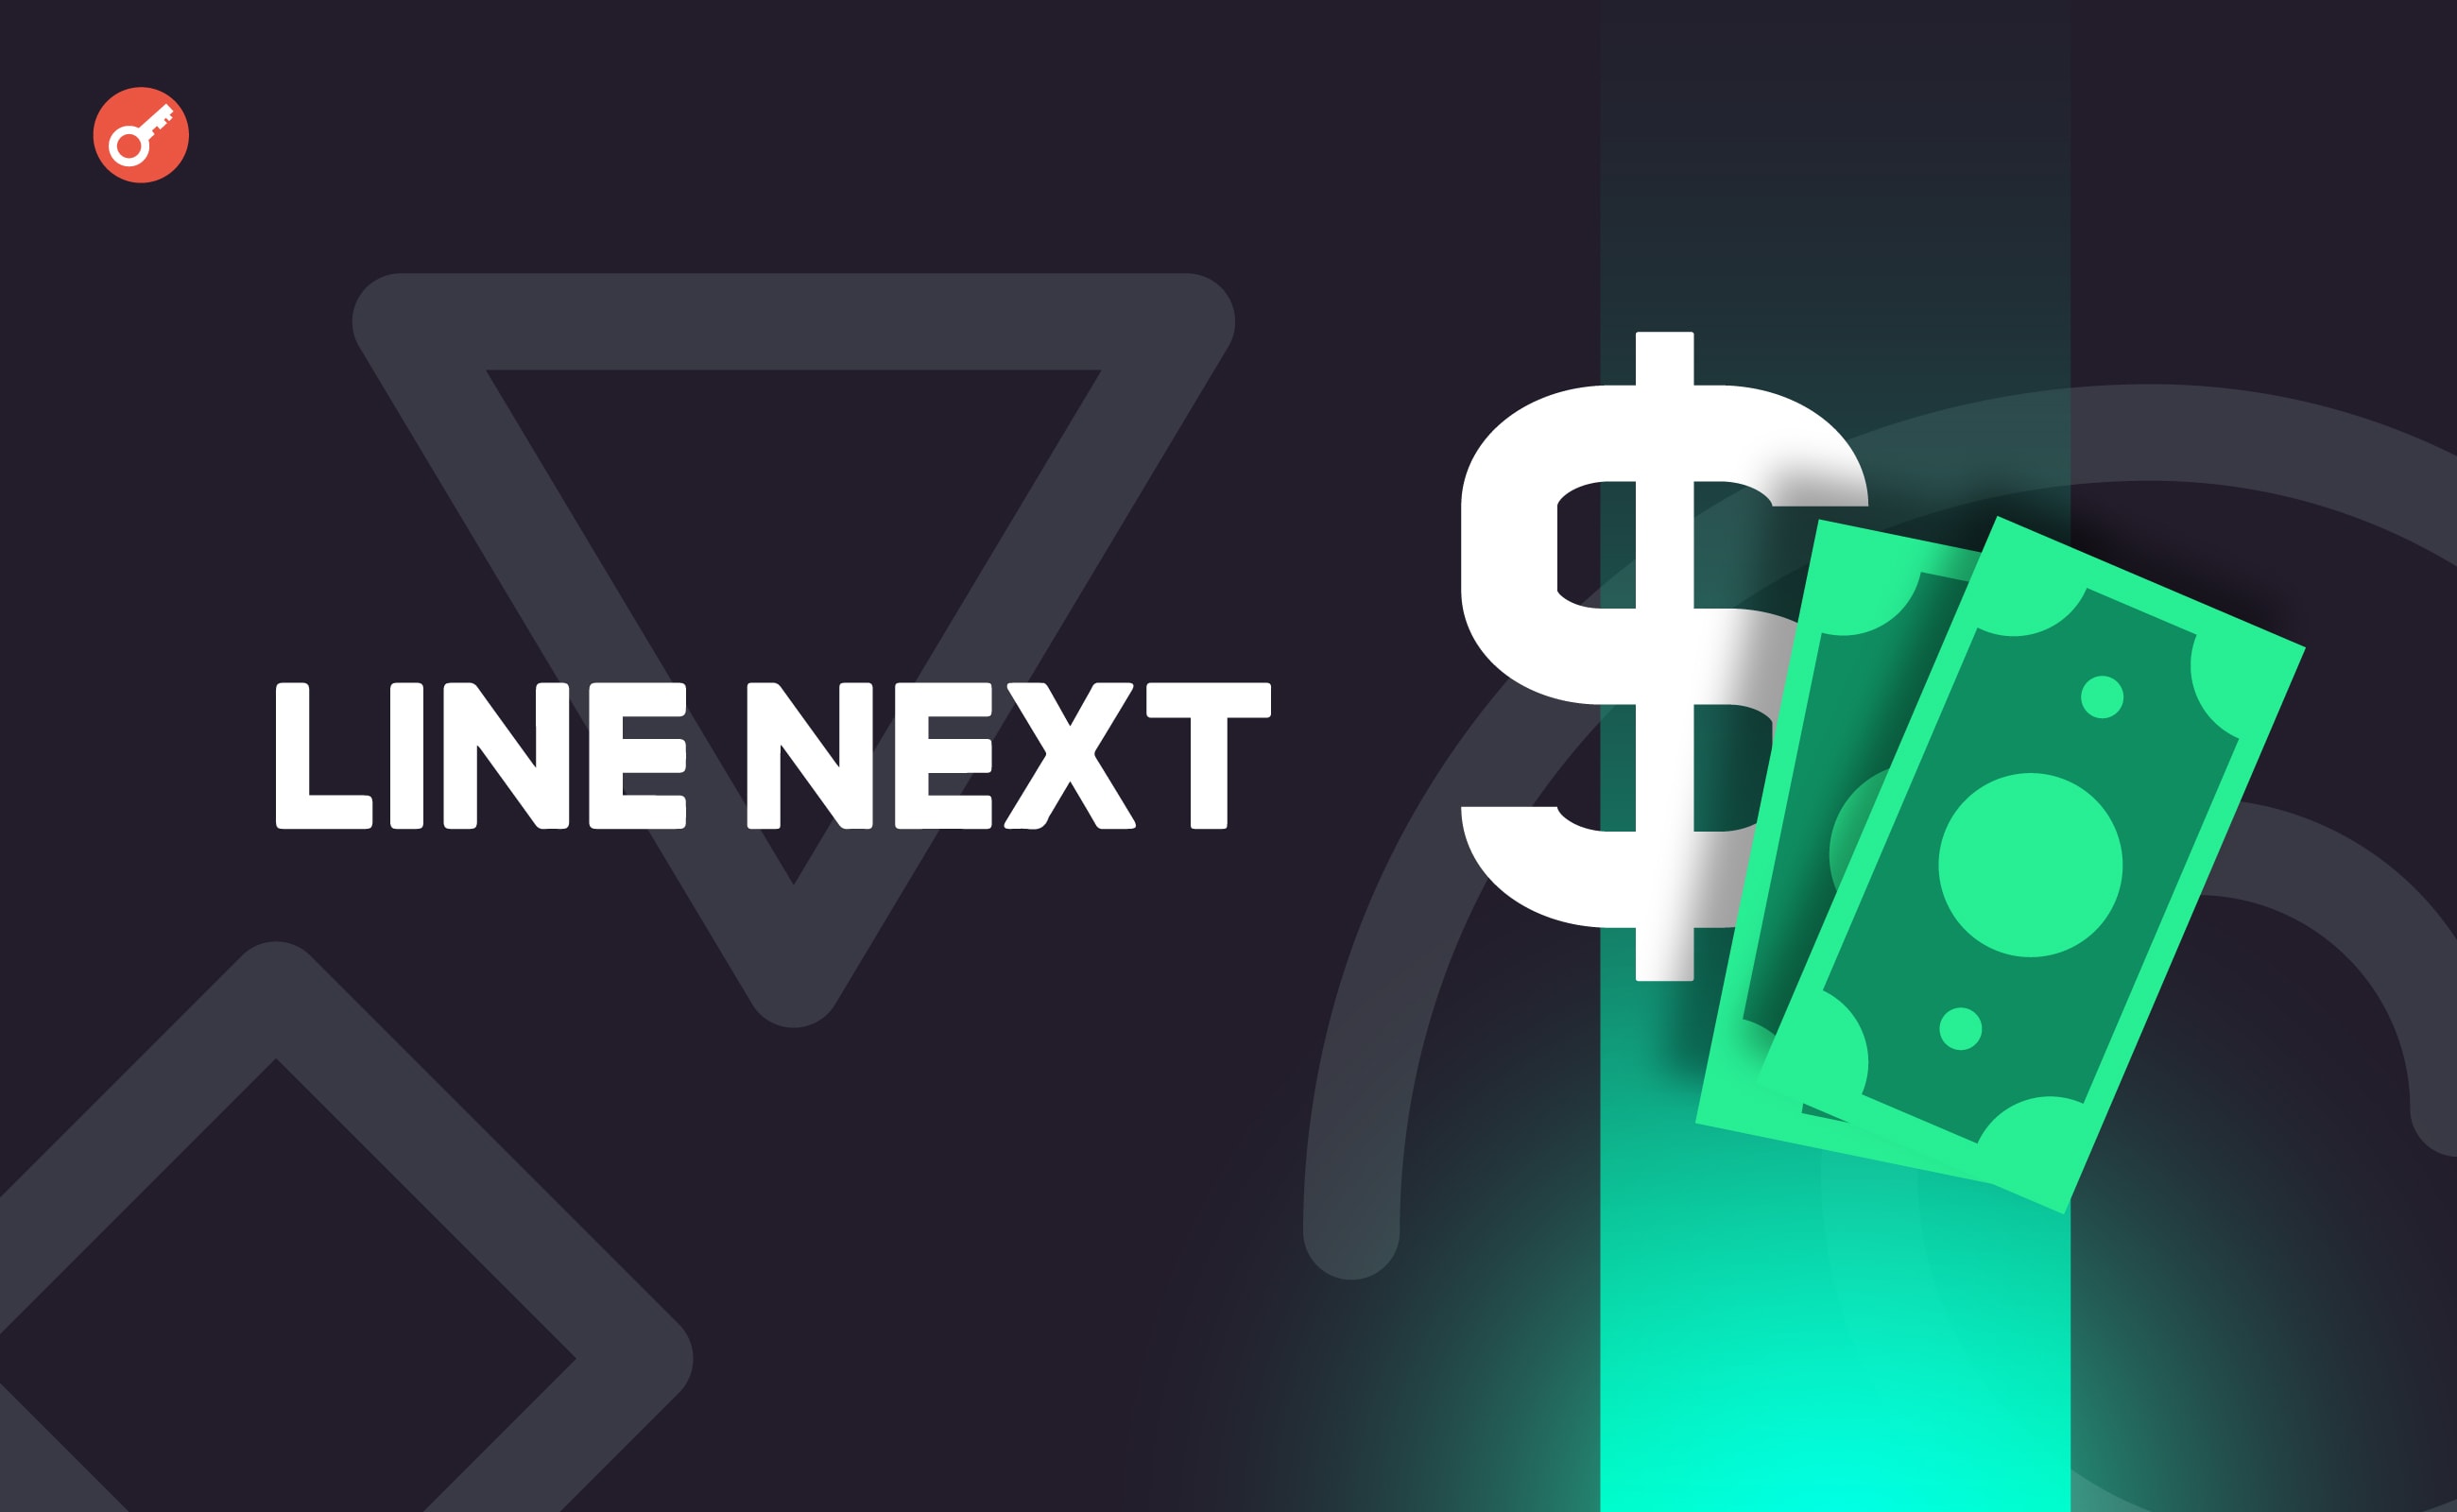 LINE NEXT залучила $140 млн інвестицій для запуску NFT-платформи. Головний колаж новини.